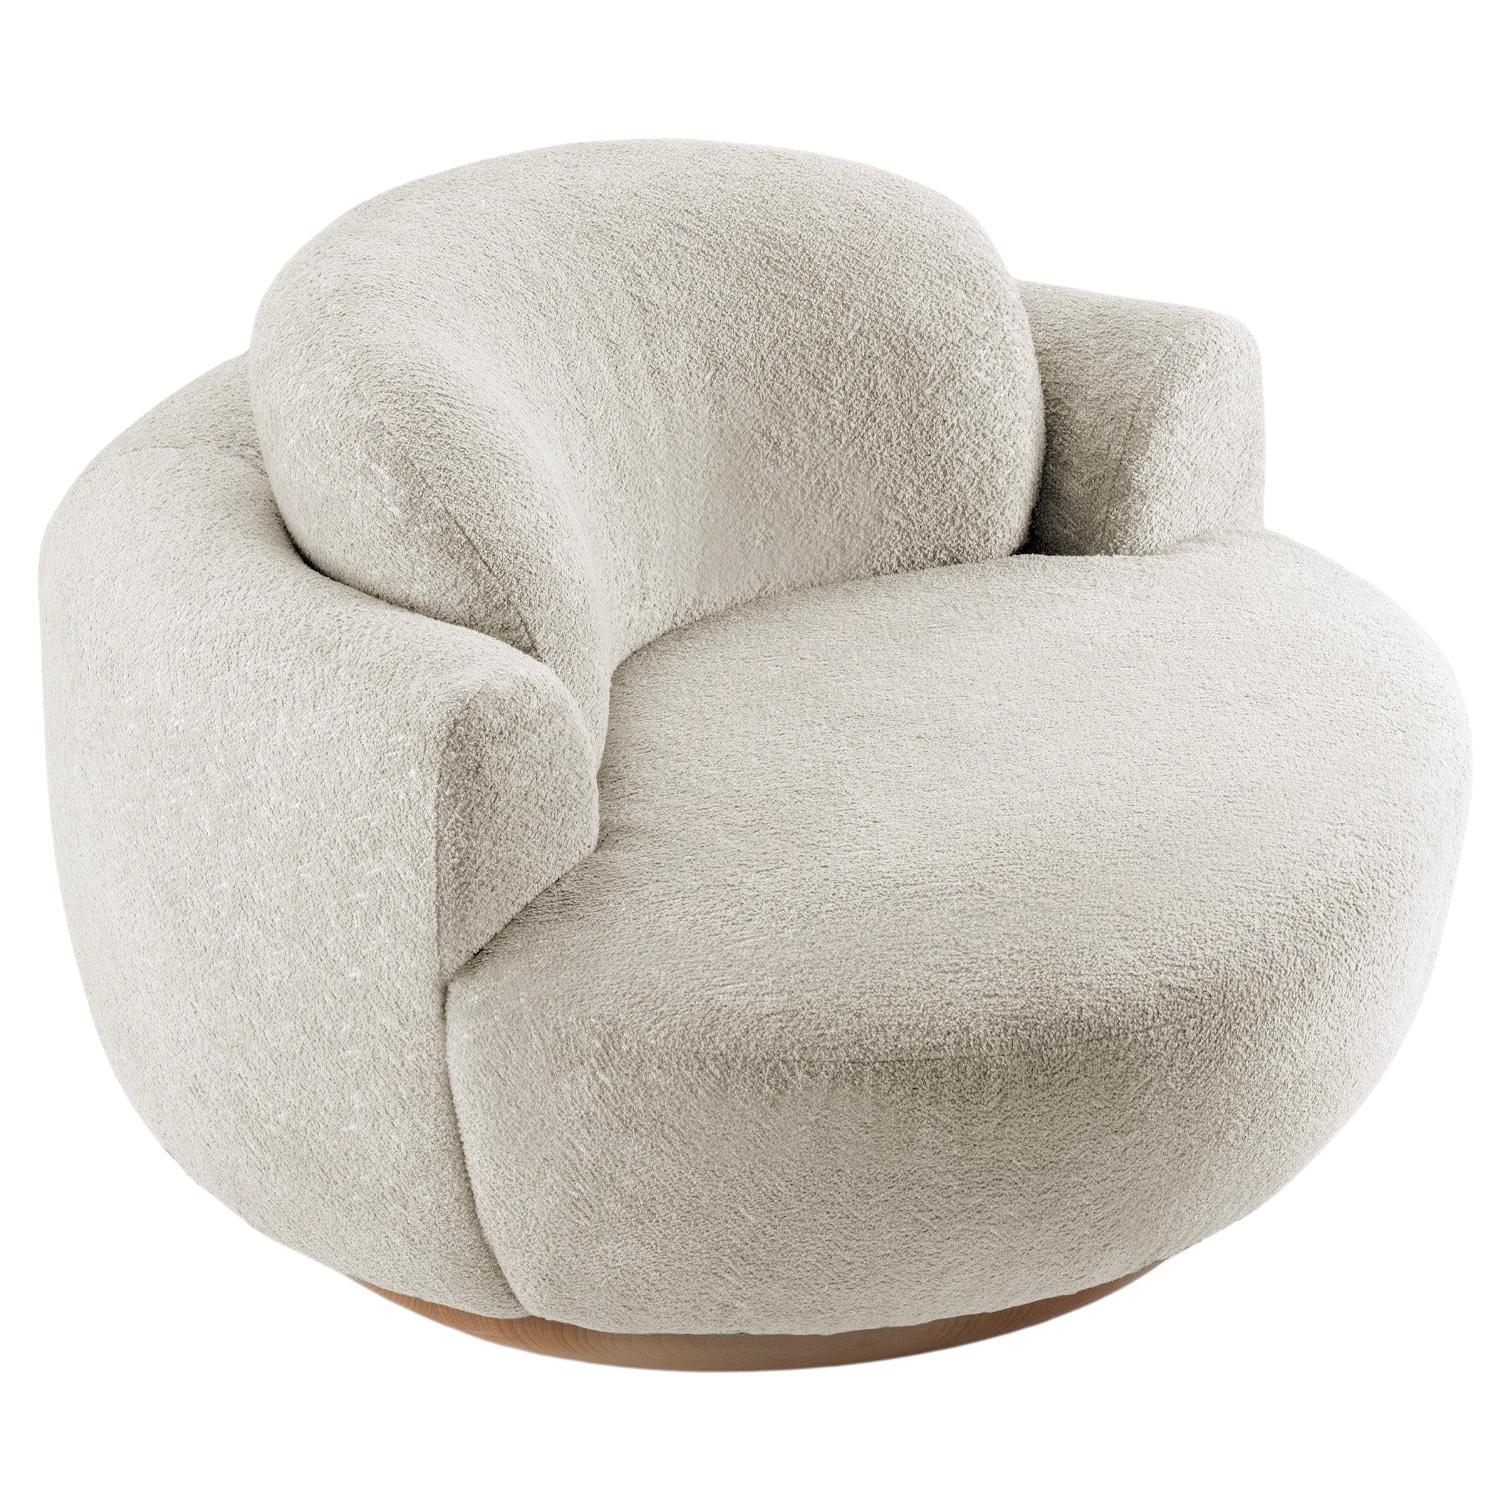 Naked-Sessel mit weichem grauem Stoff und natürlichem Holzfuß